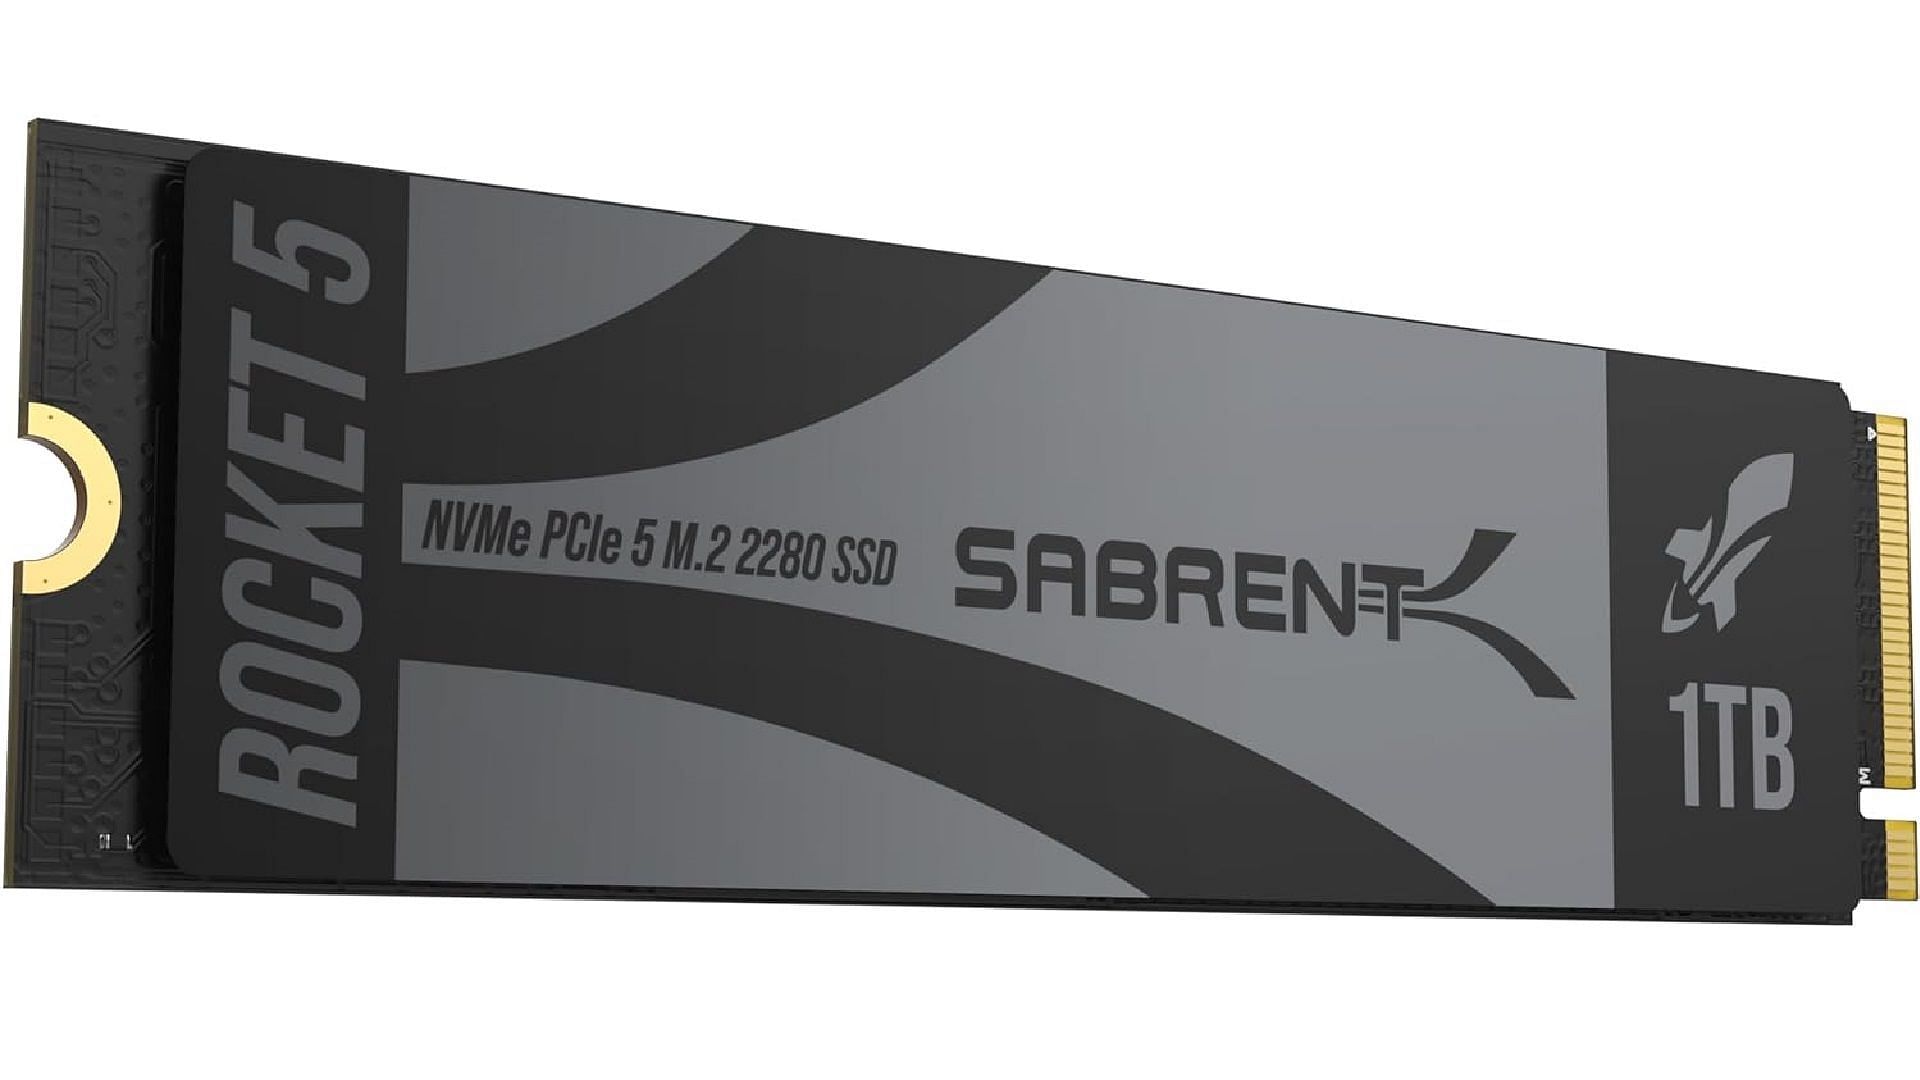 SABRENT NVMe M.2 1TB Gen 5 SSD (Image via Sabrent/Amazon)